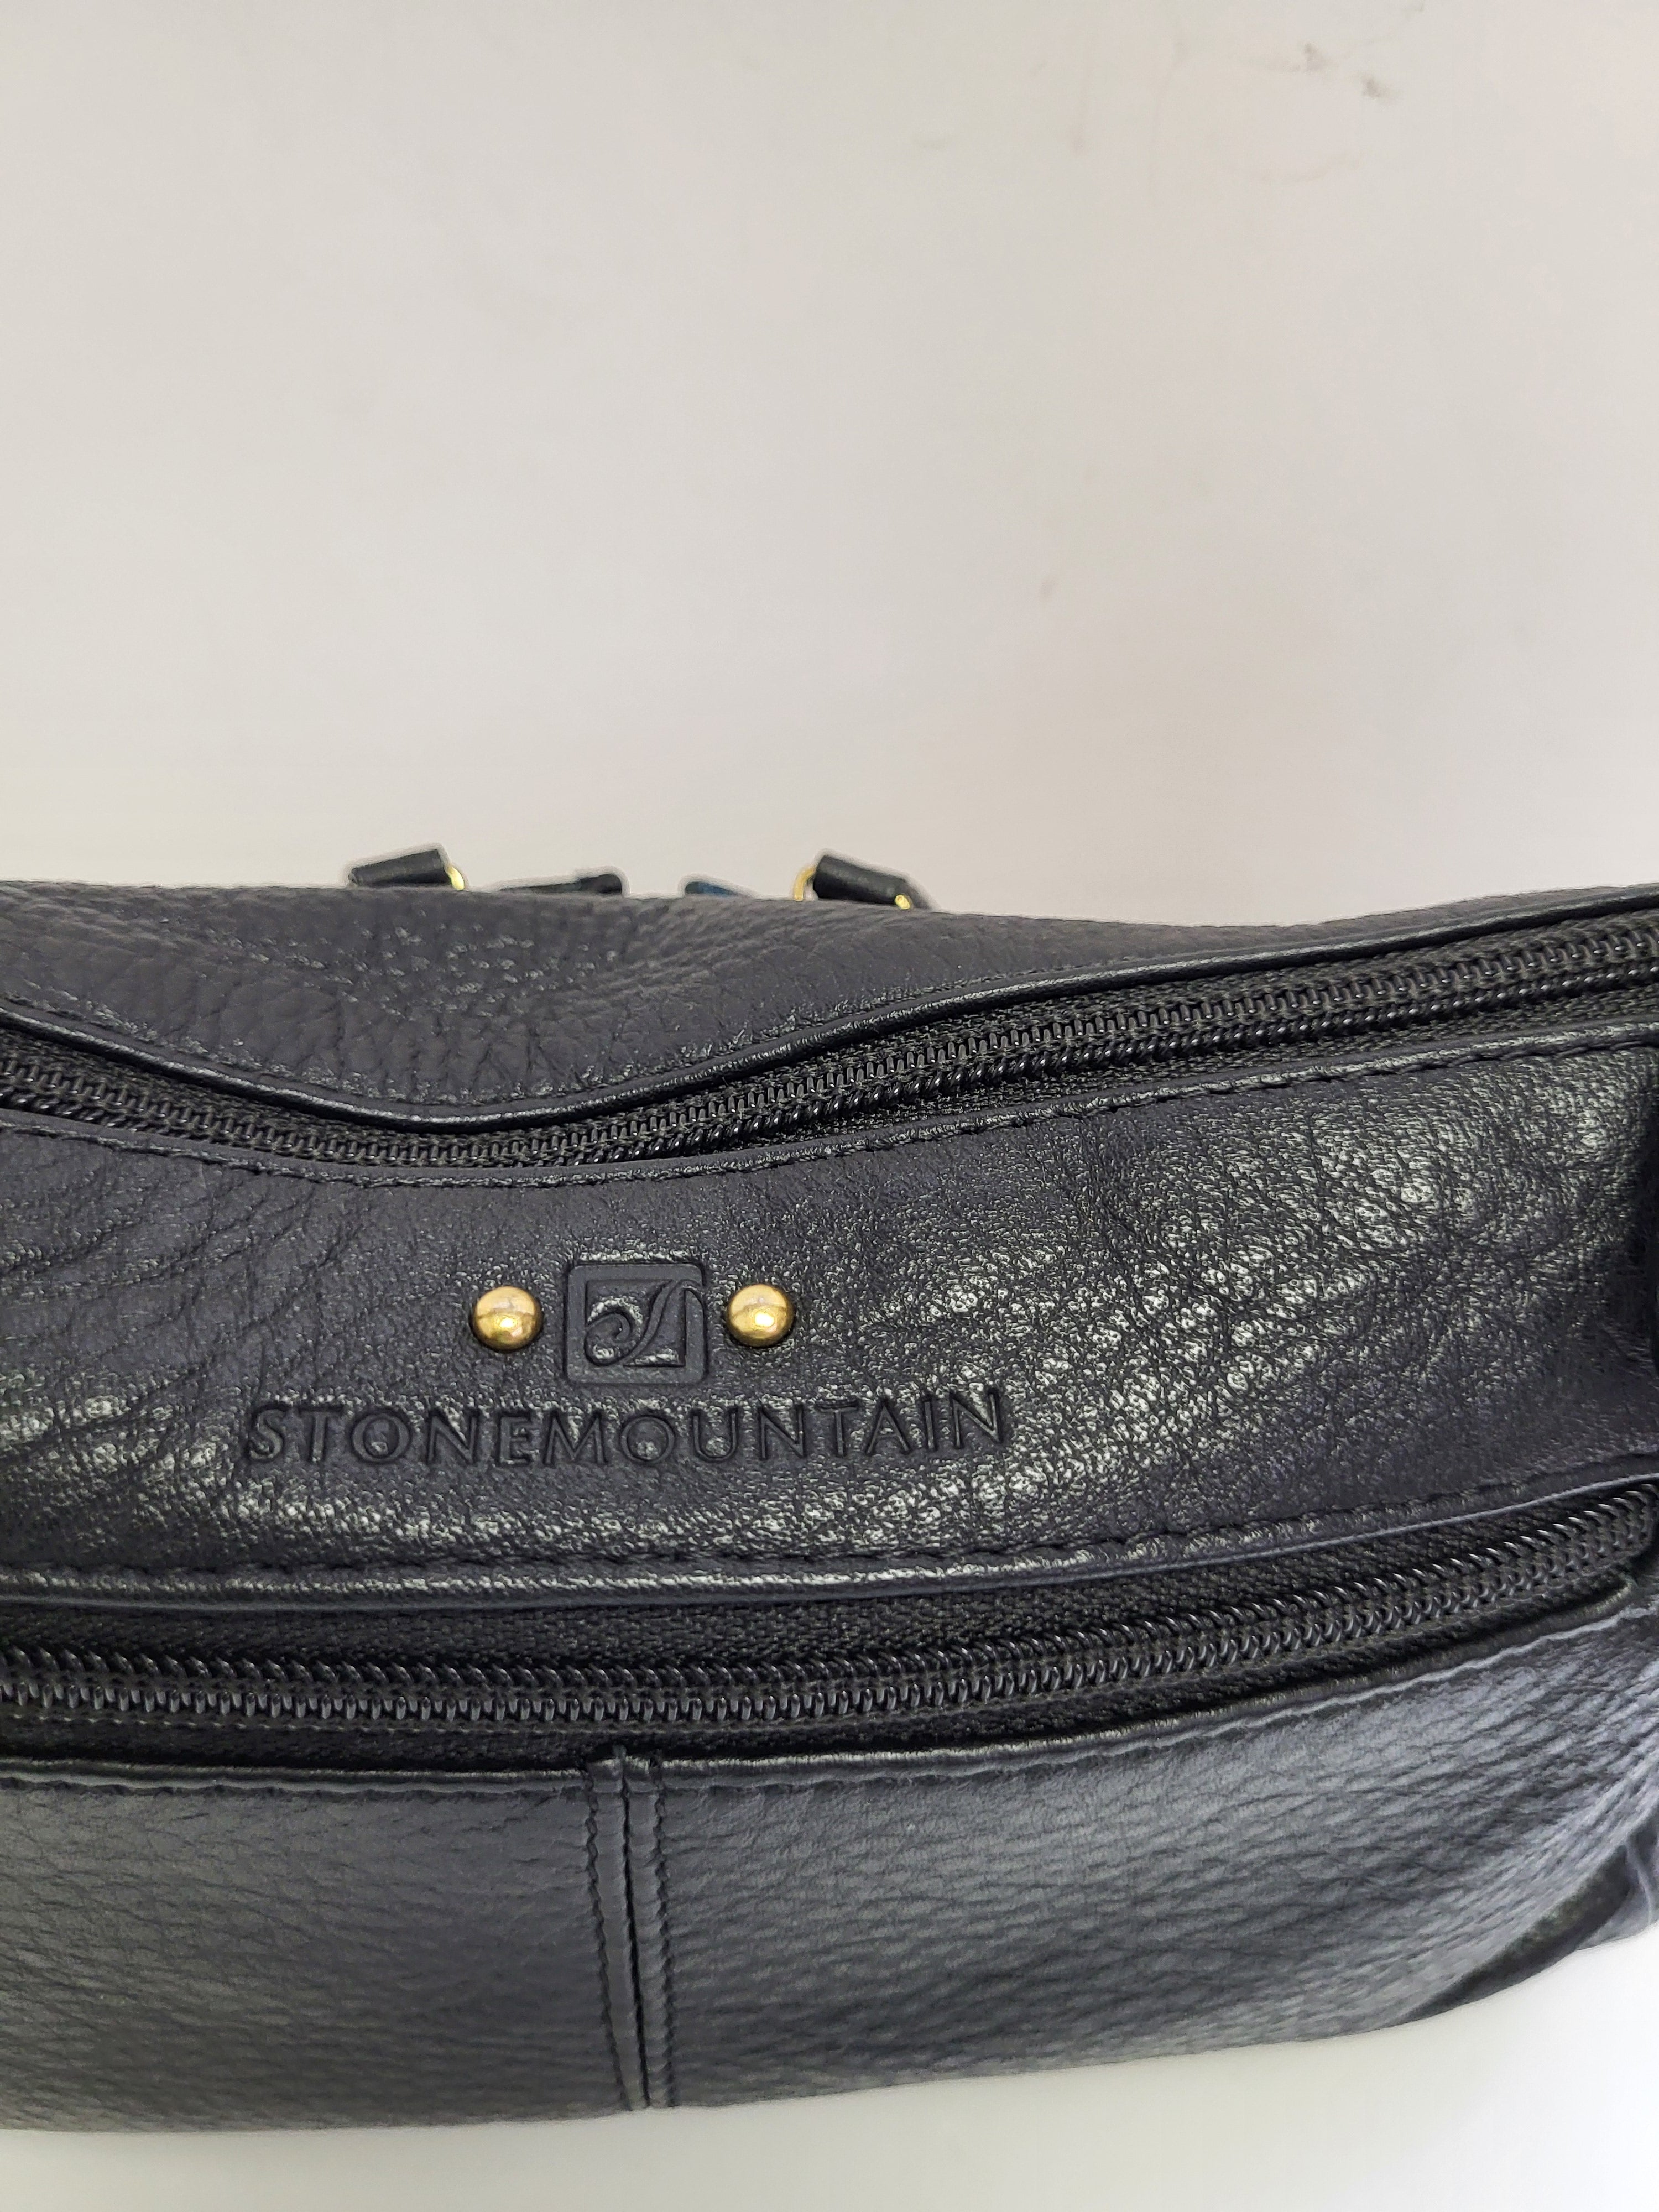 Stone Mountain Black Leather Short Shoulder Bag